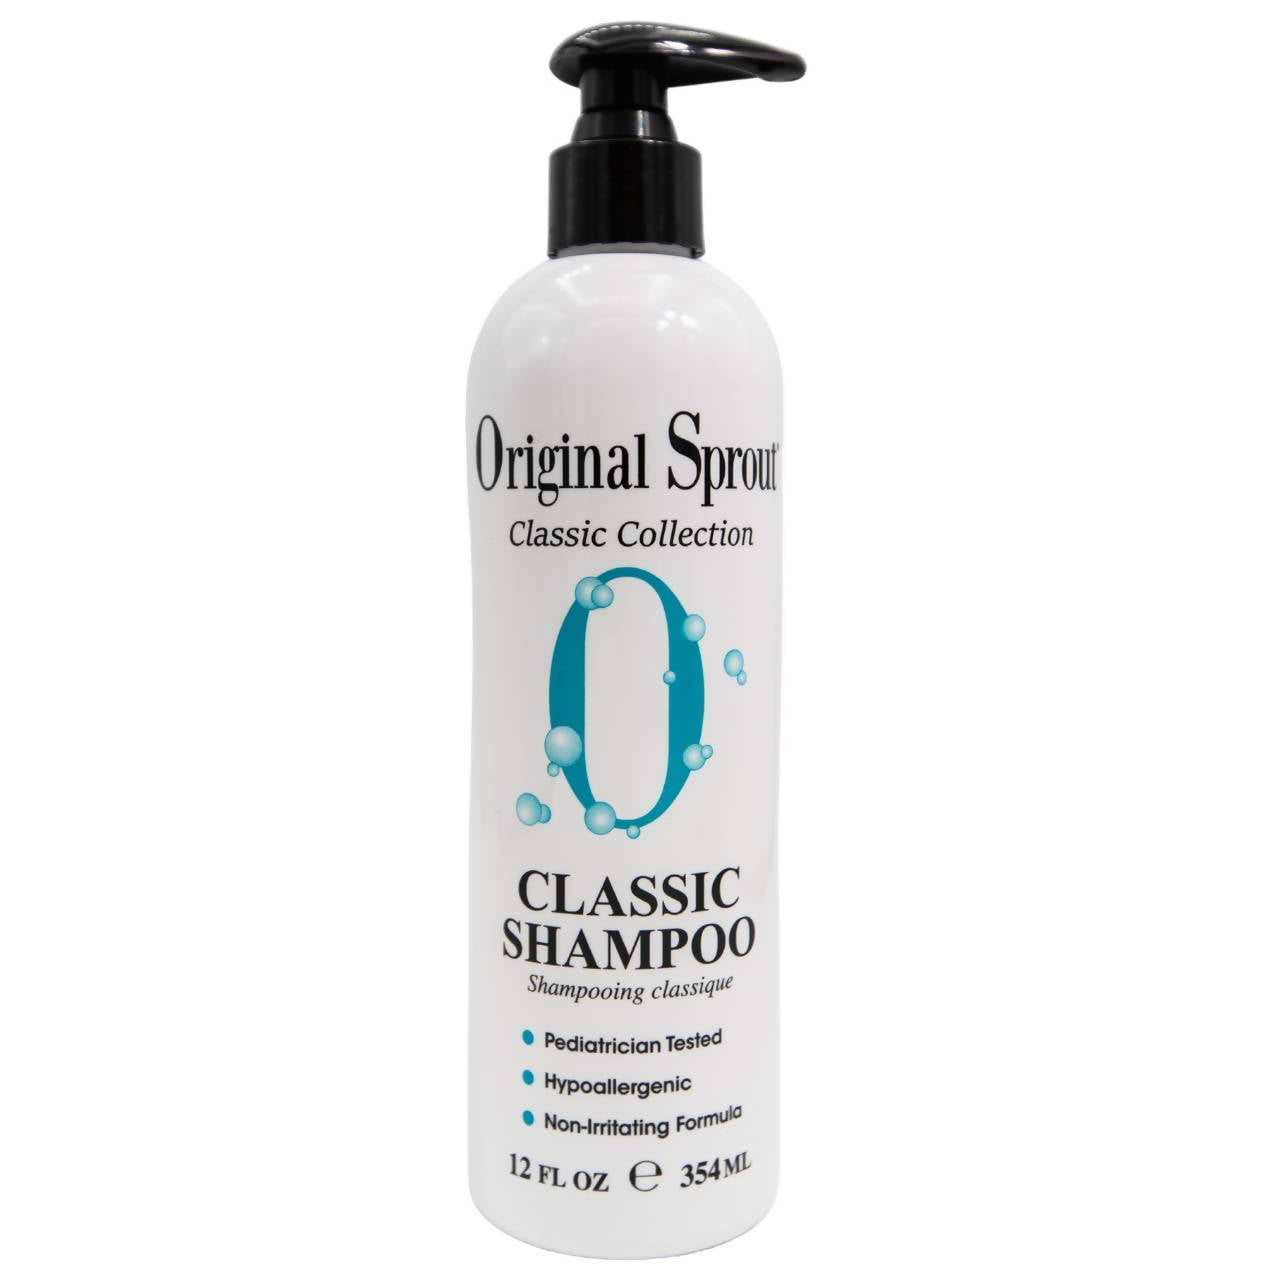 Original Sprout 32 oz Classic Shampoo